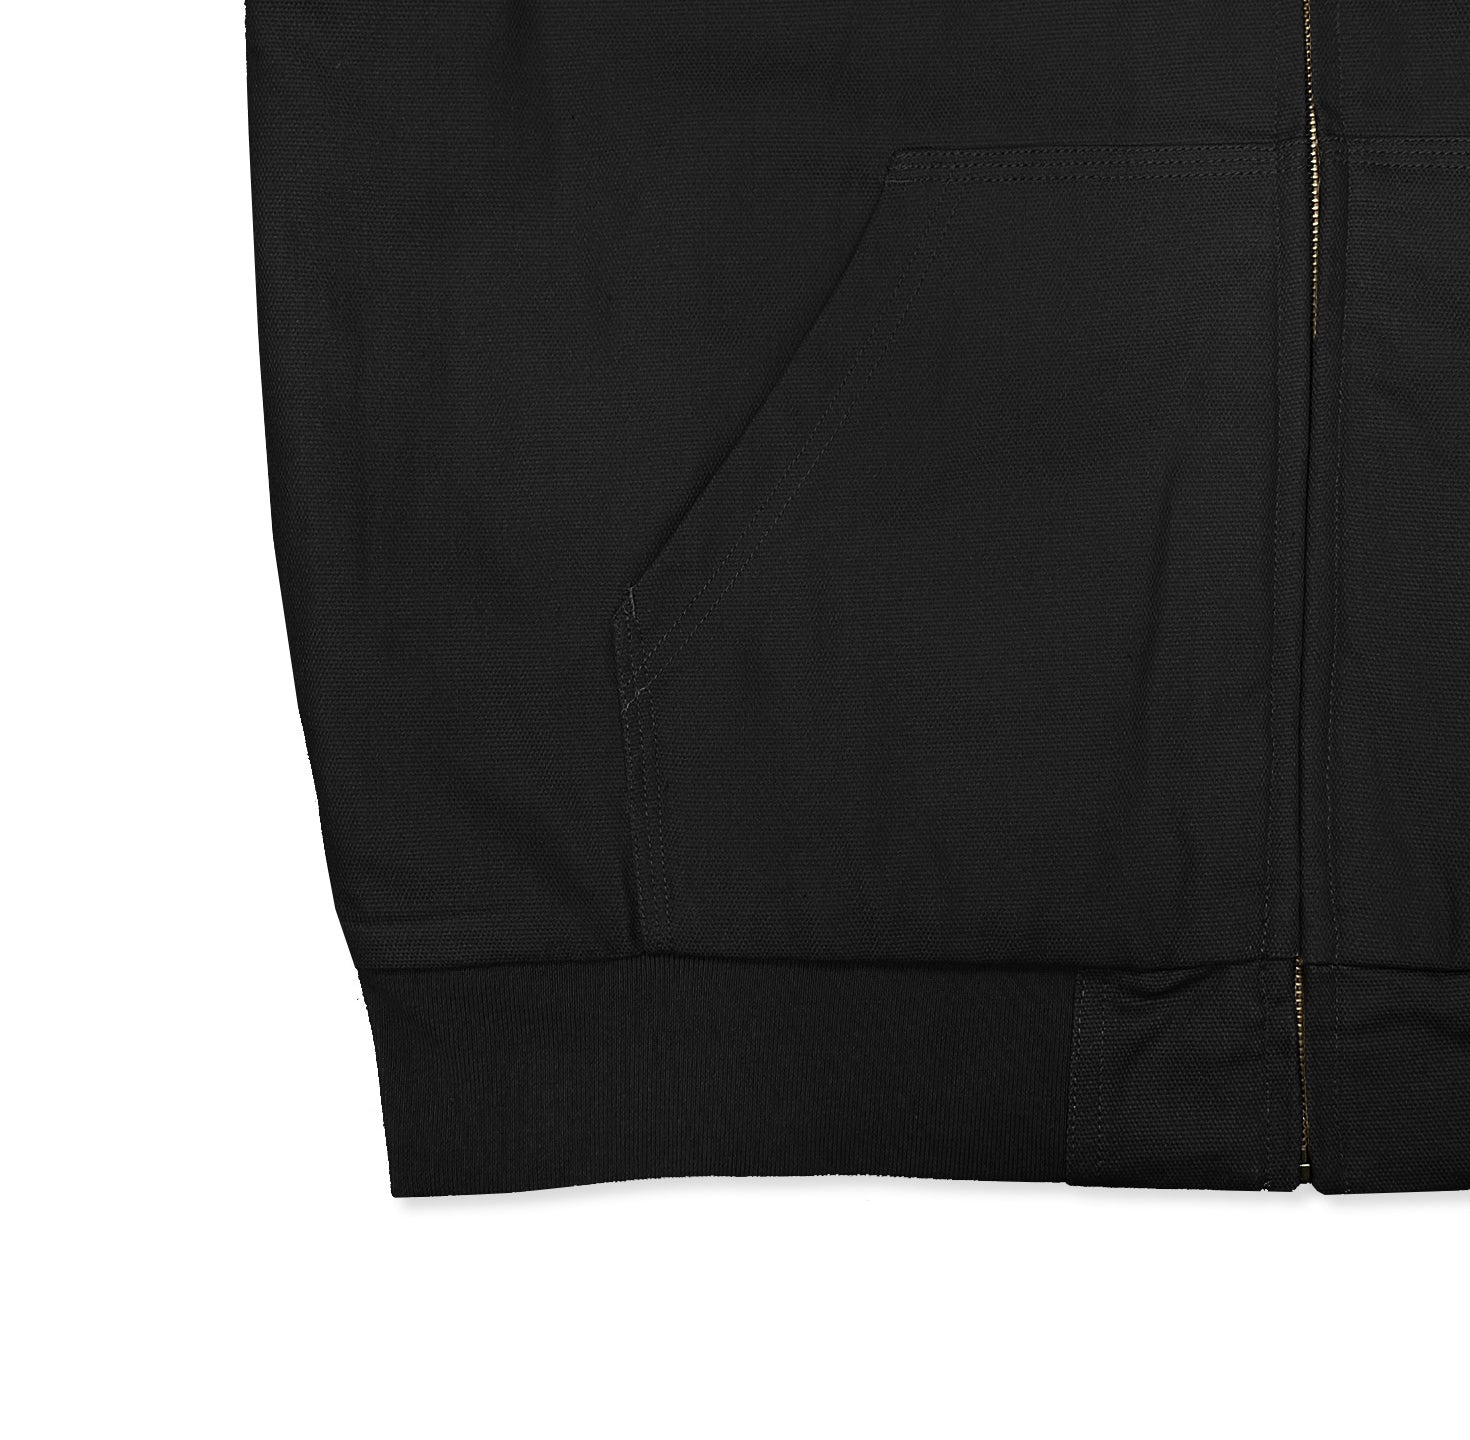 Kore Hunter Workwear Jacket in Black | Shop Korean Culture Streetwear ...